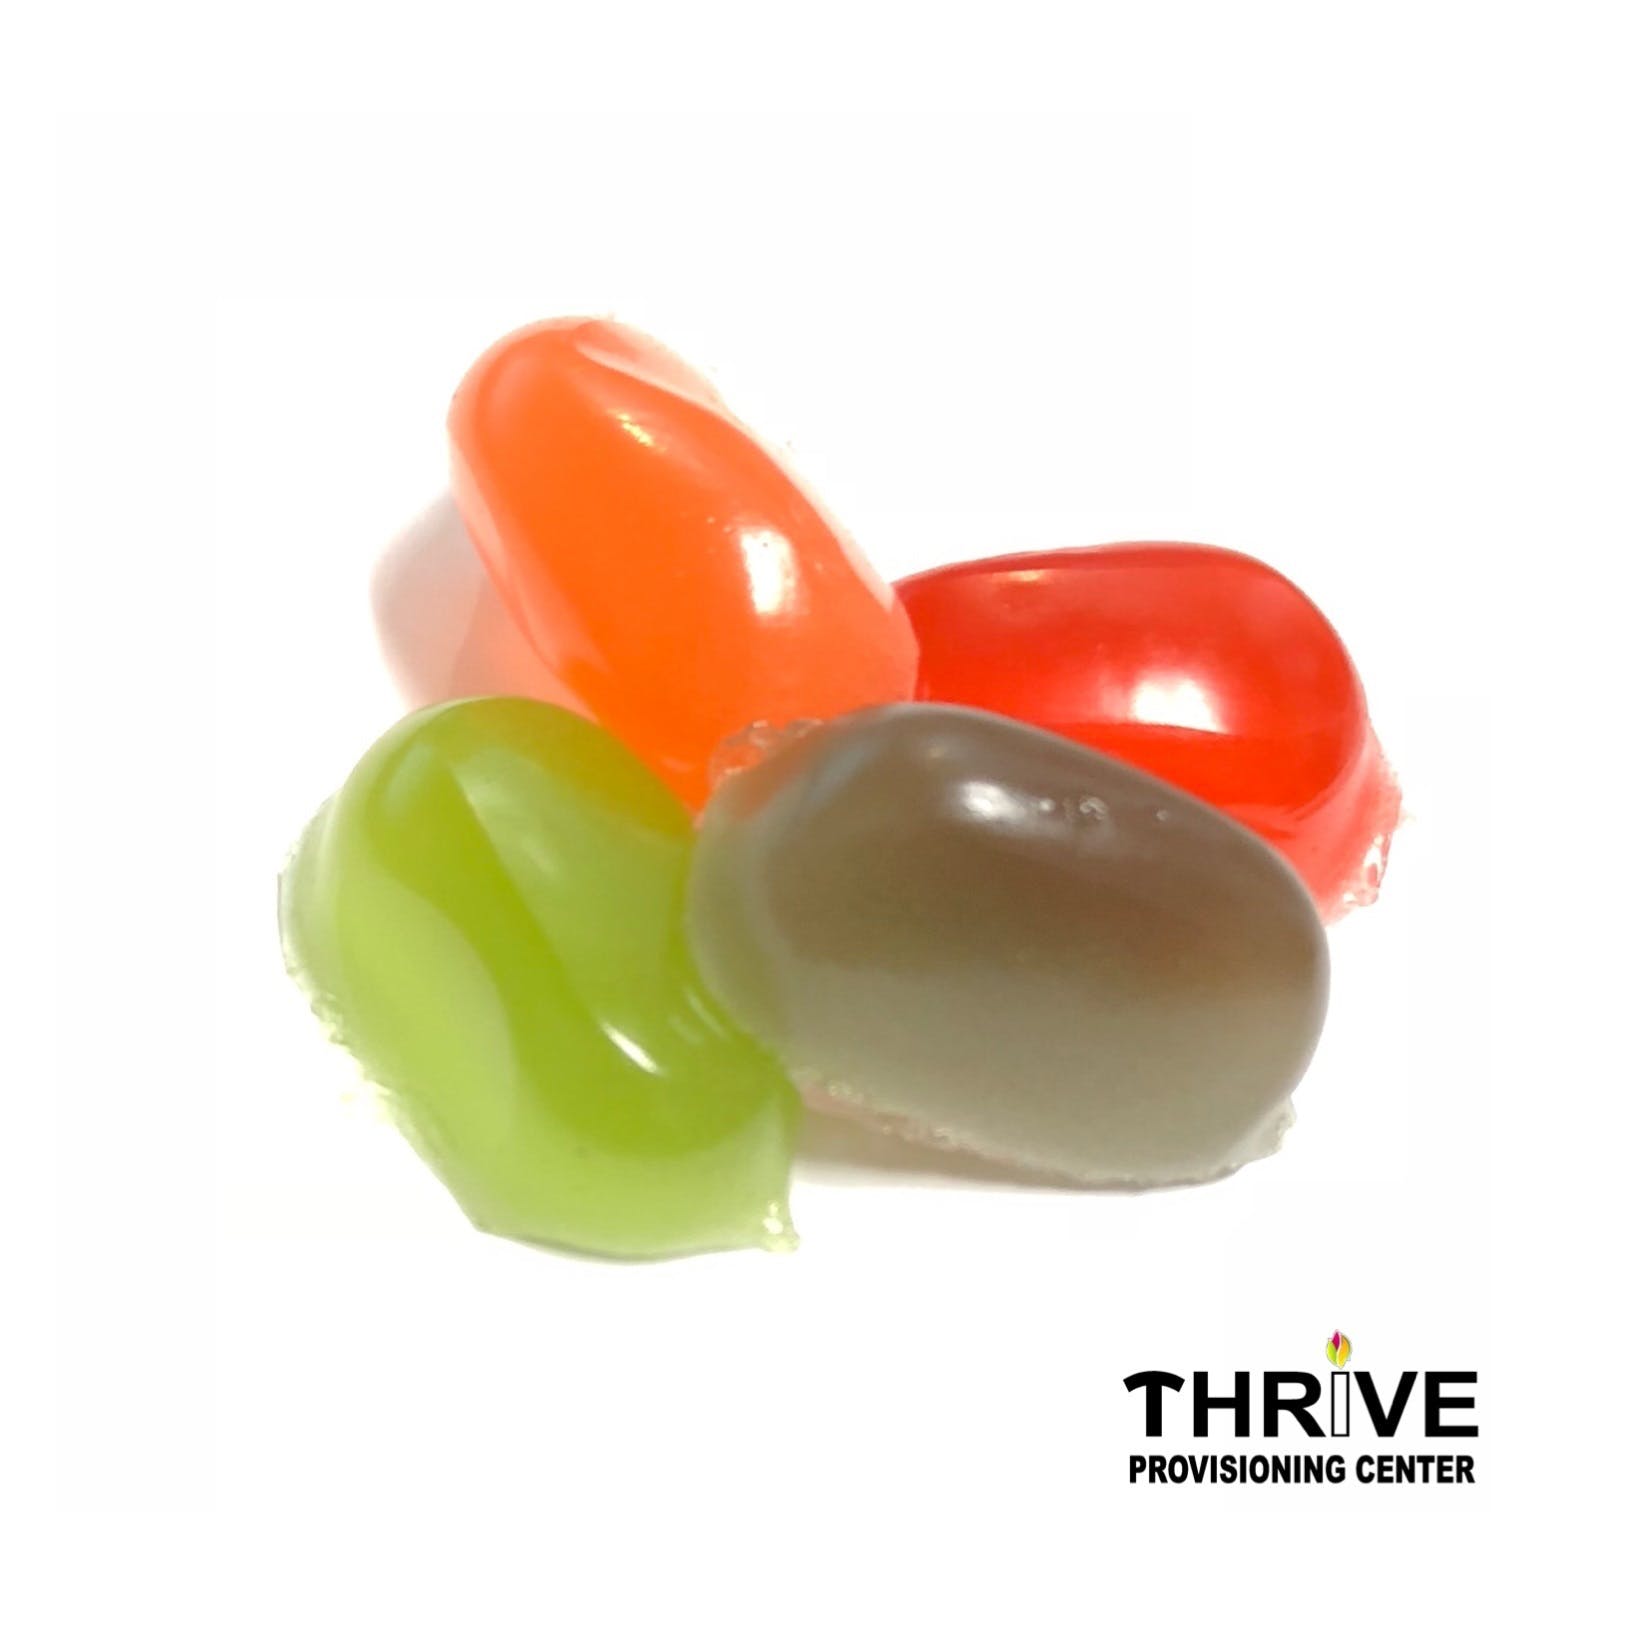 edible-high-grade-single-dose-gummies-80mg